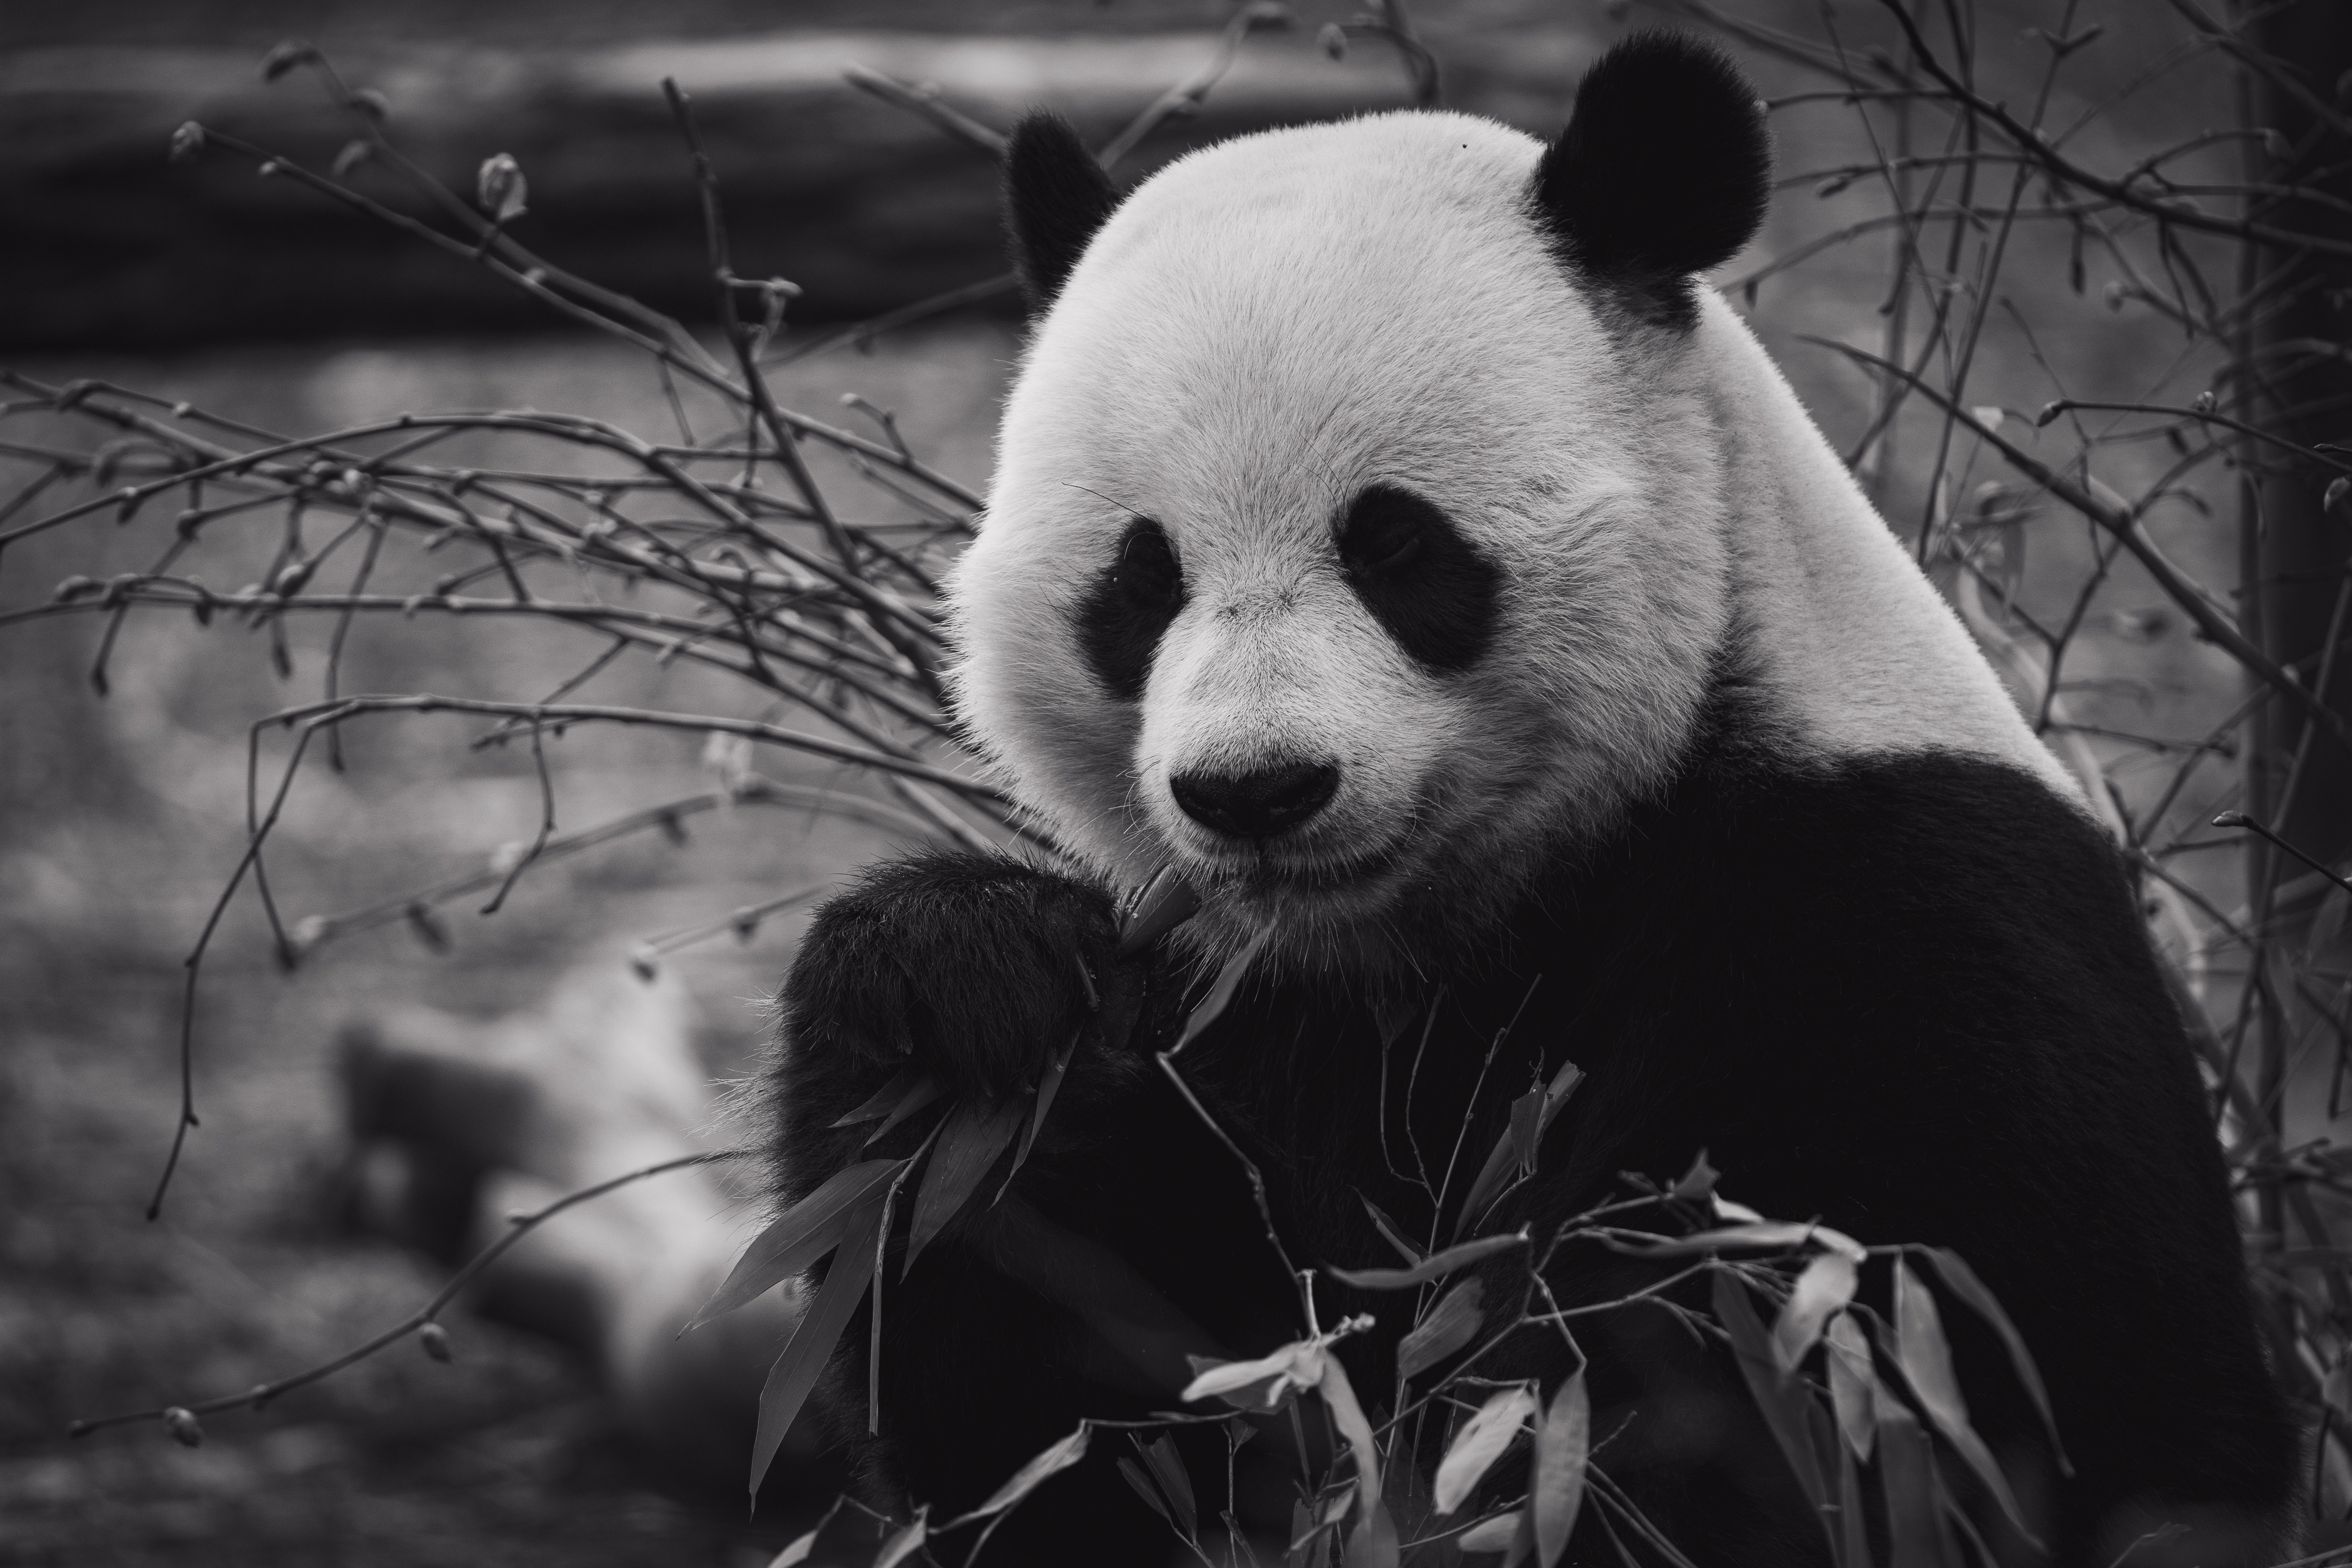 Verdensnaturfonden fejrer 50 aar i pandaens tegn